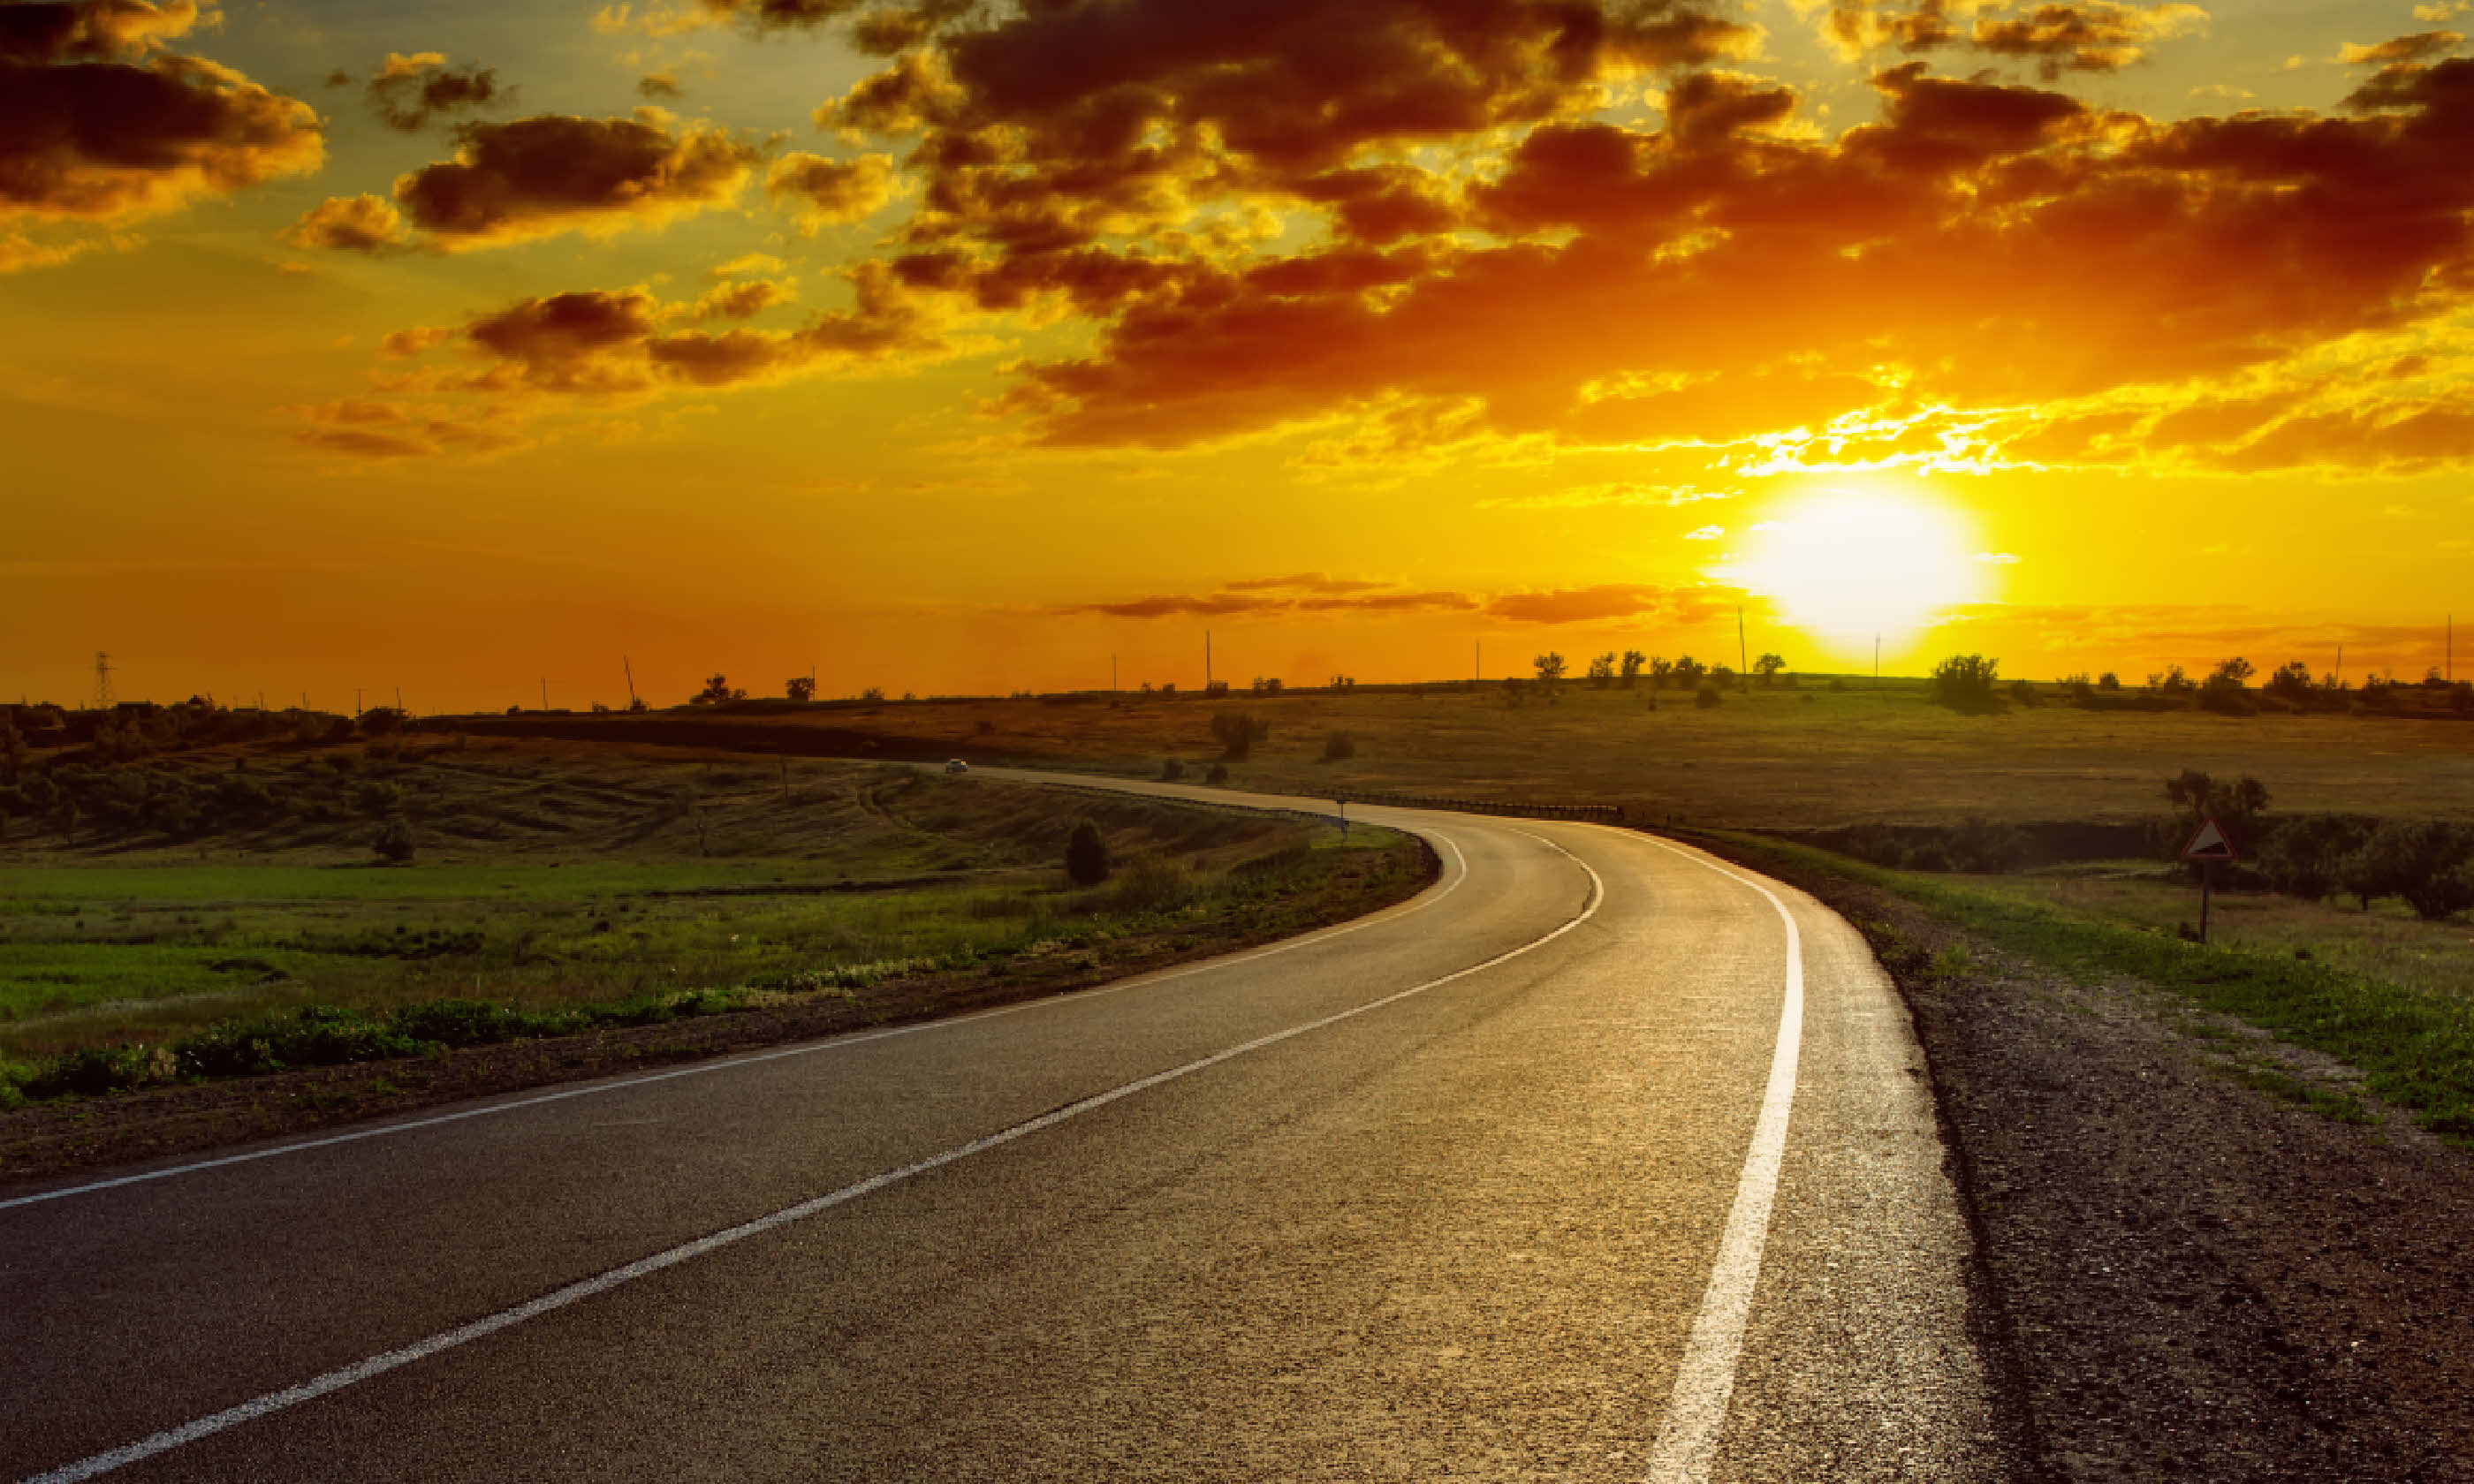 Sunset over asphalt road (Shutterstock)